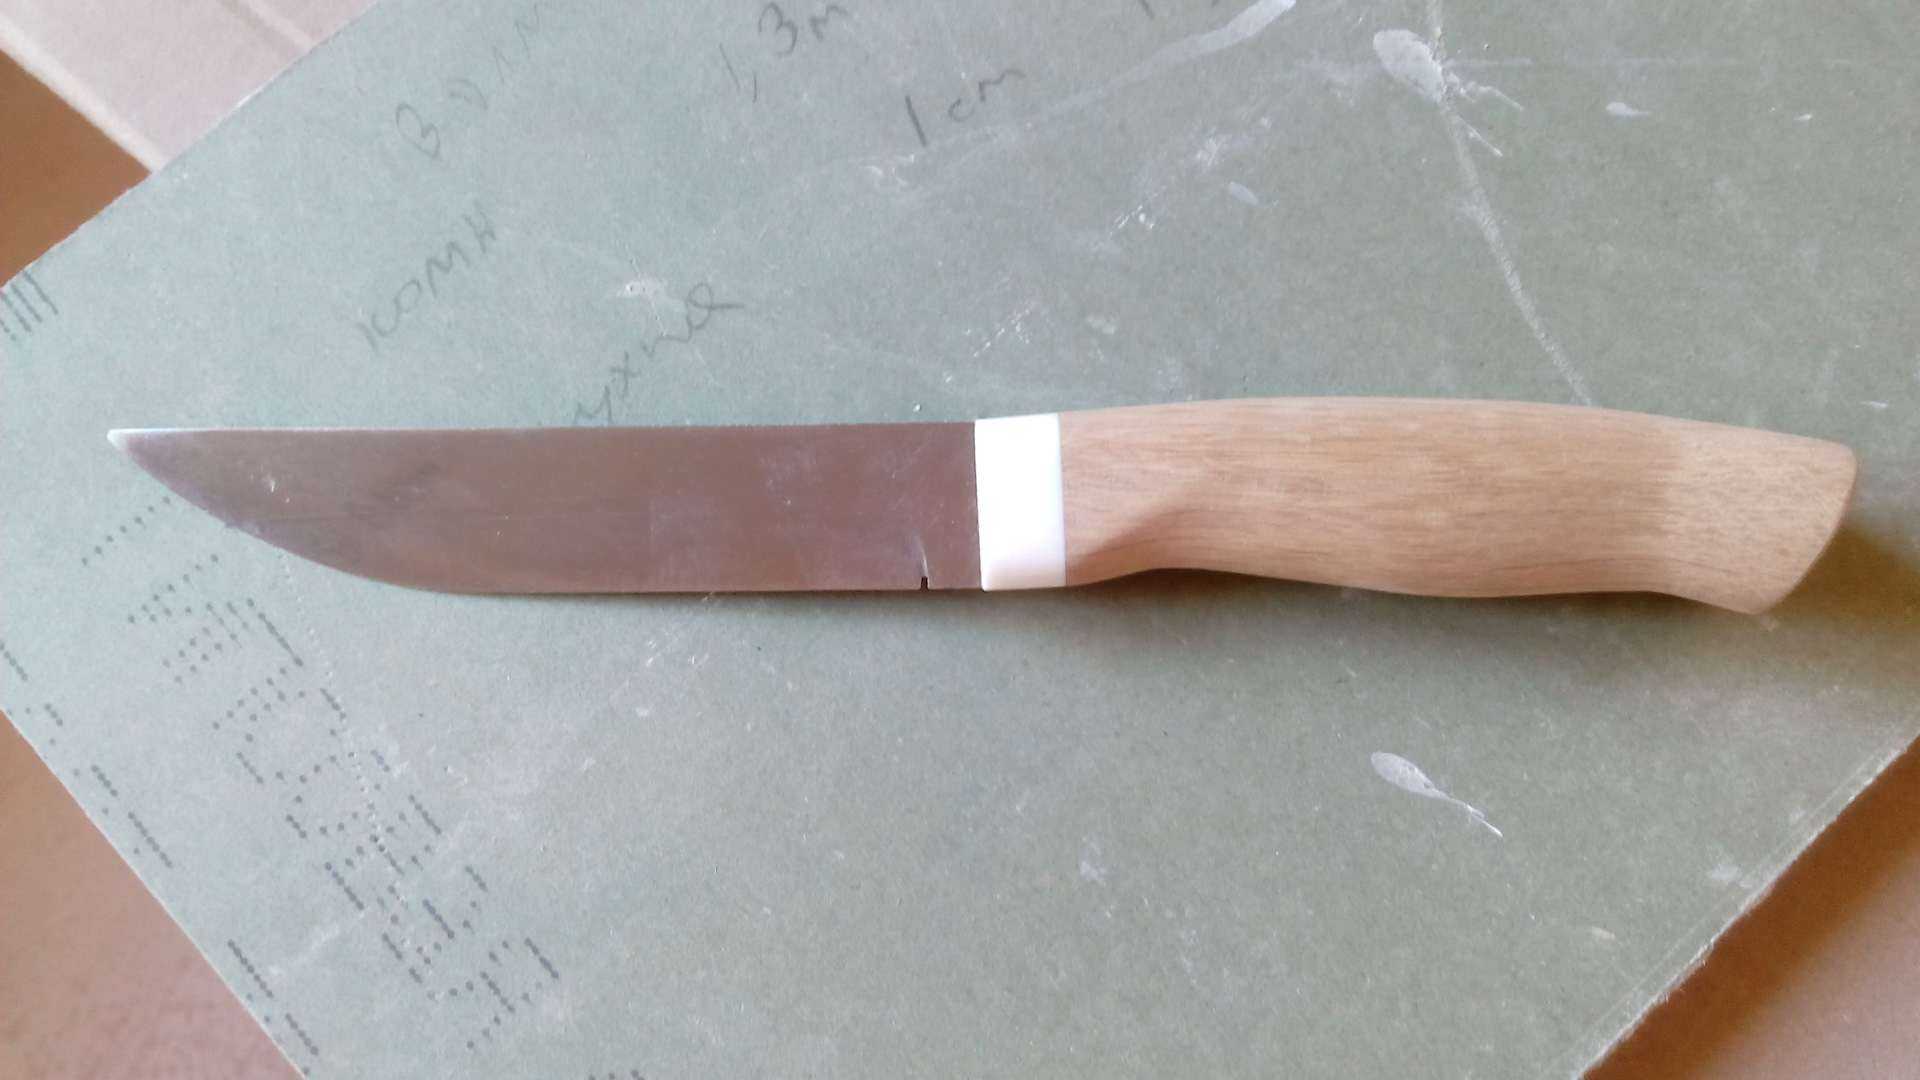 Самодельные ножи из обыкновенной пилы